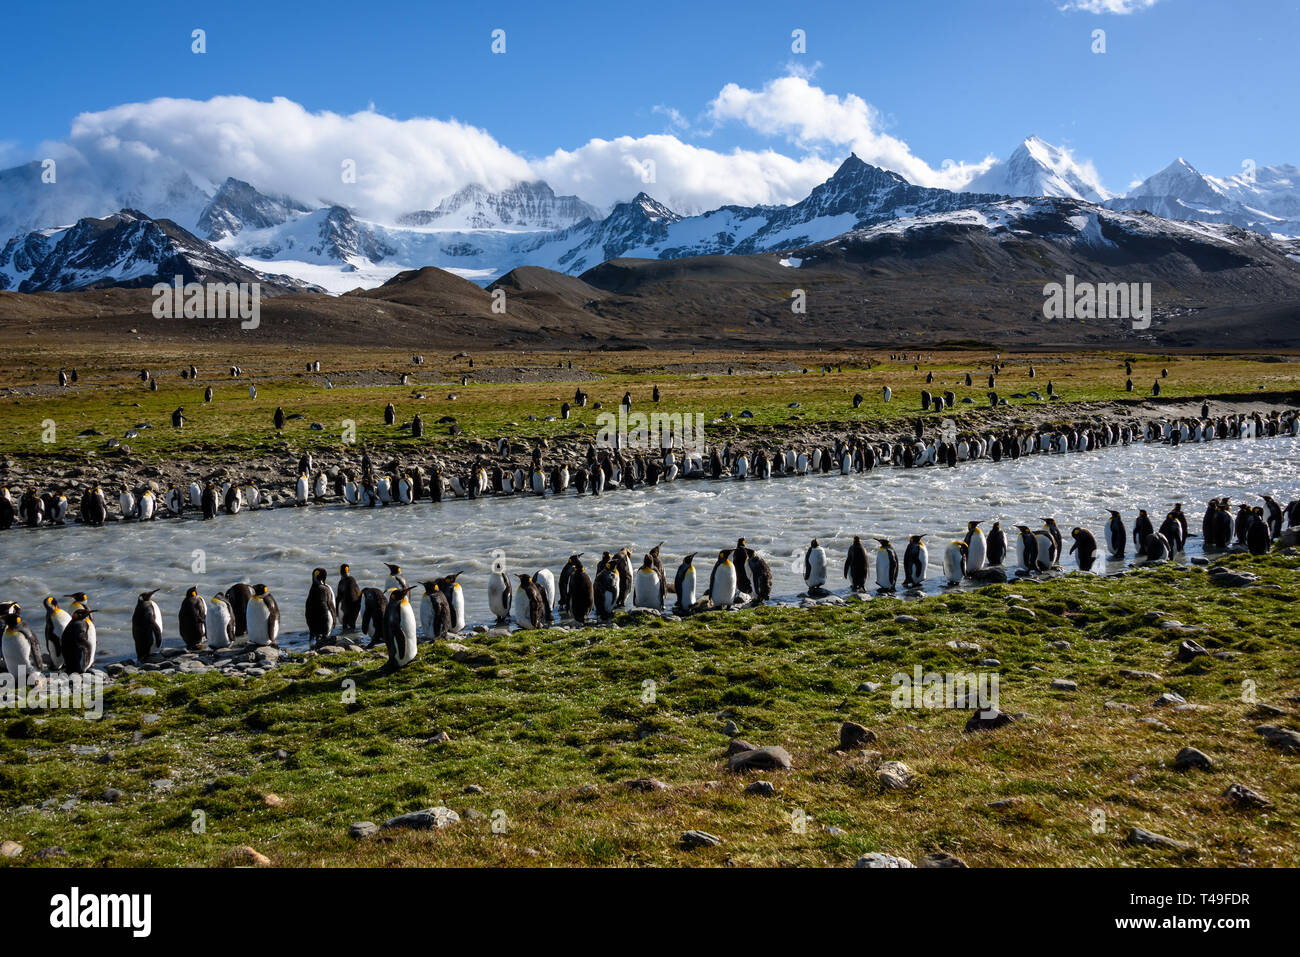 Schönen sonnigen Gras bedeckte Landschaft mit großen King Penguin Colony, Pinguine in Schlick gefüllt Fluss mit Bergen und Himmel im Hintergrund, S Stockfoto